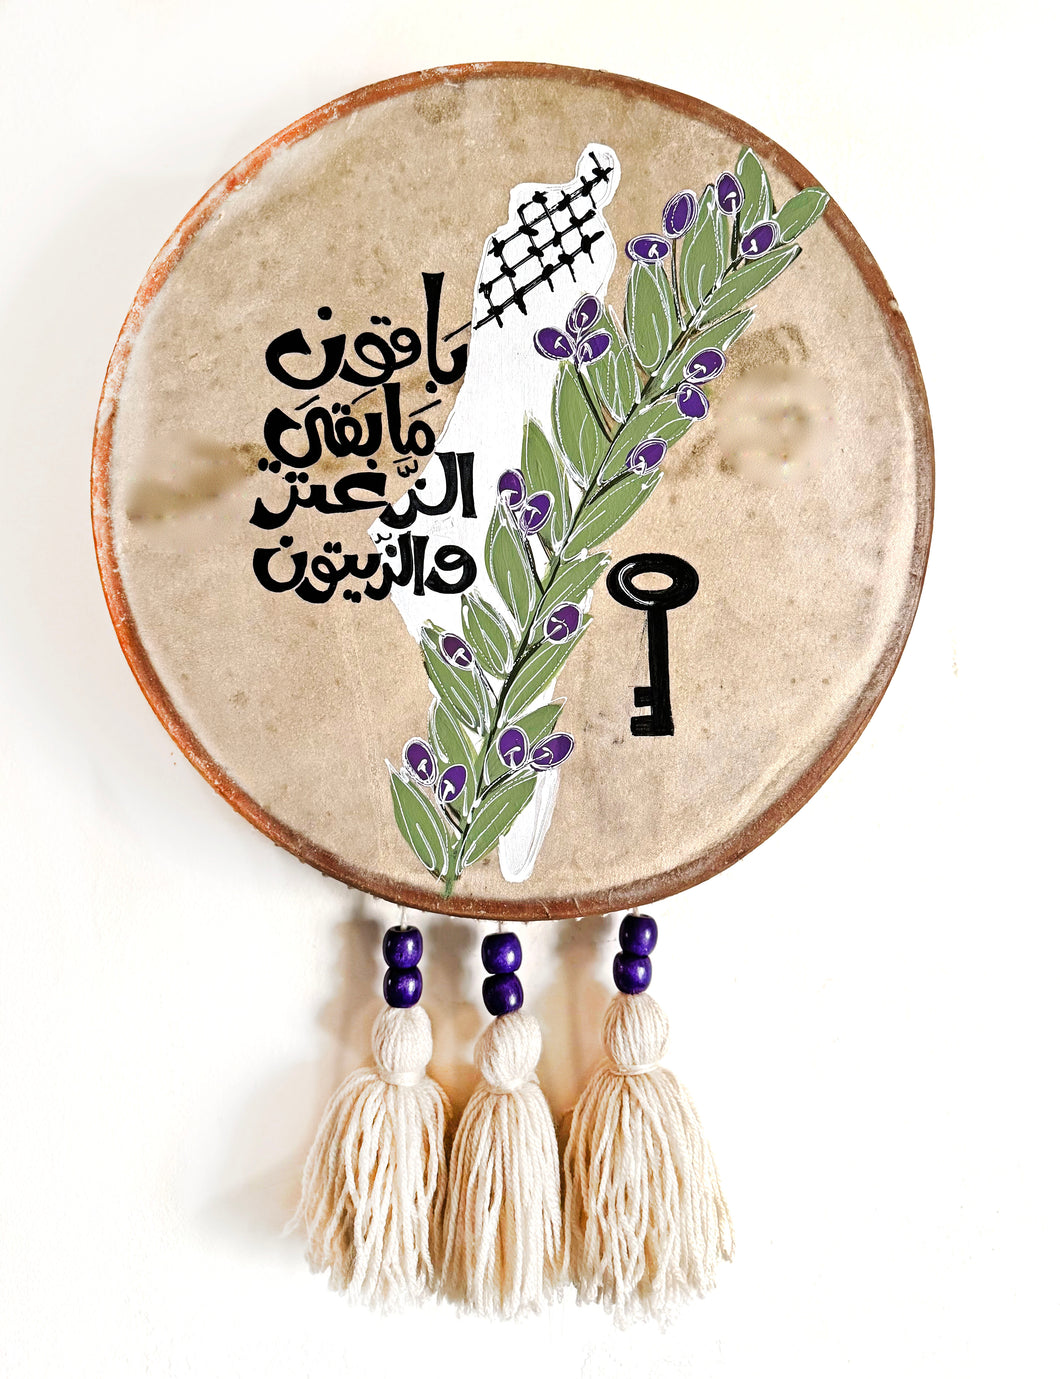 Handmade palestine Round Leather Tambourine Wall Decoration